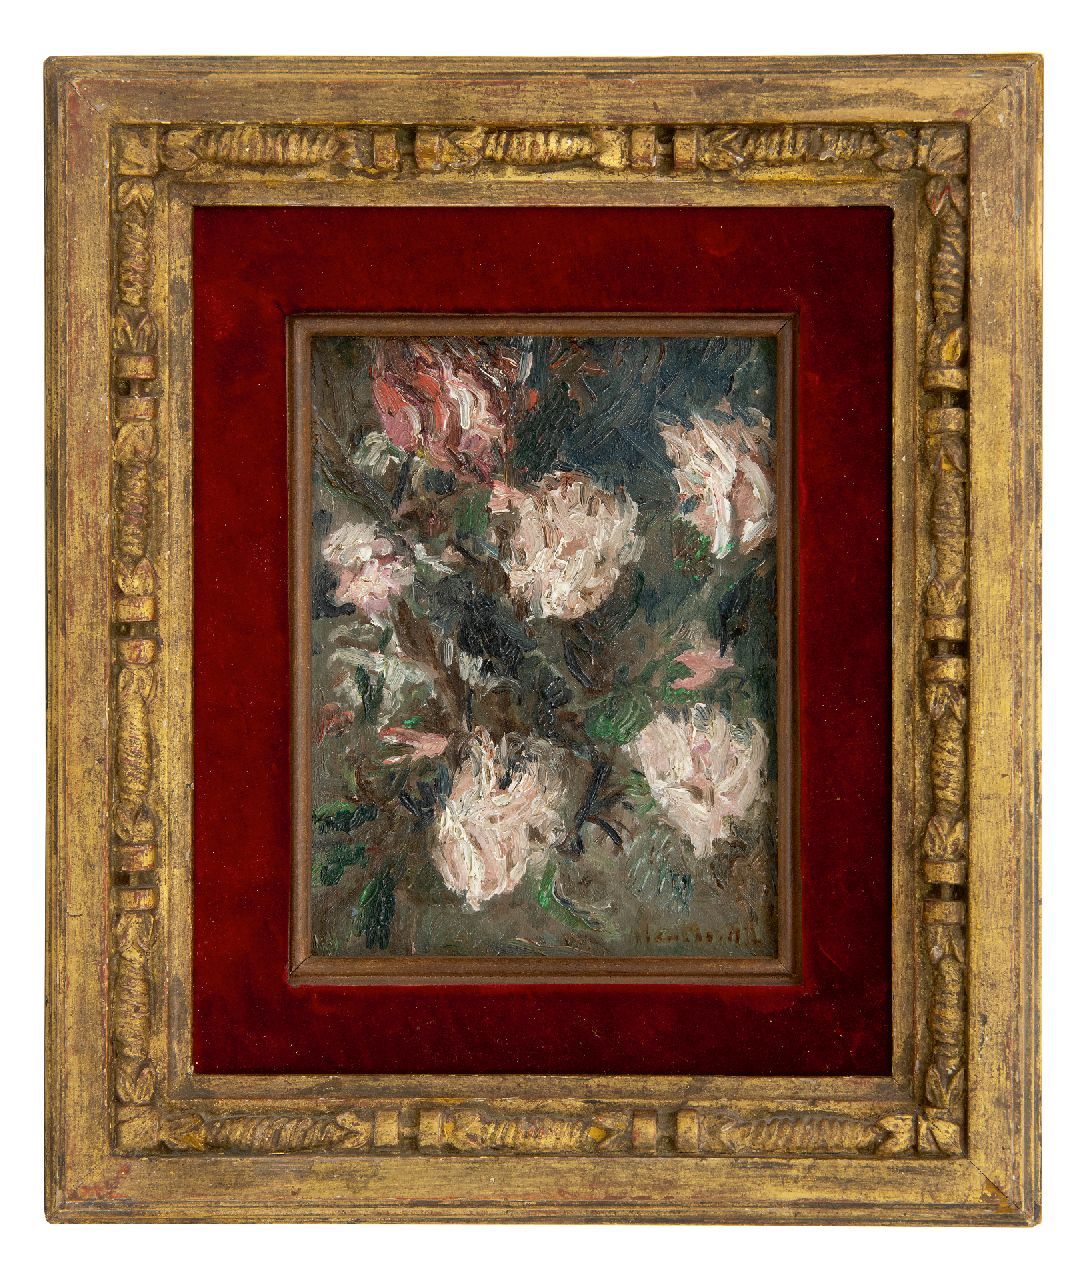 Monticelli A.J.T.  | 'Adolphe' Joseph Thomas Monticelli Monticelli | Schilderijen te koop aangeboden | Rozen, olieverf op doek 21,3 x 16,1 cm, gesigneerd rechtsonder